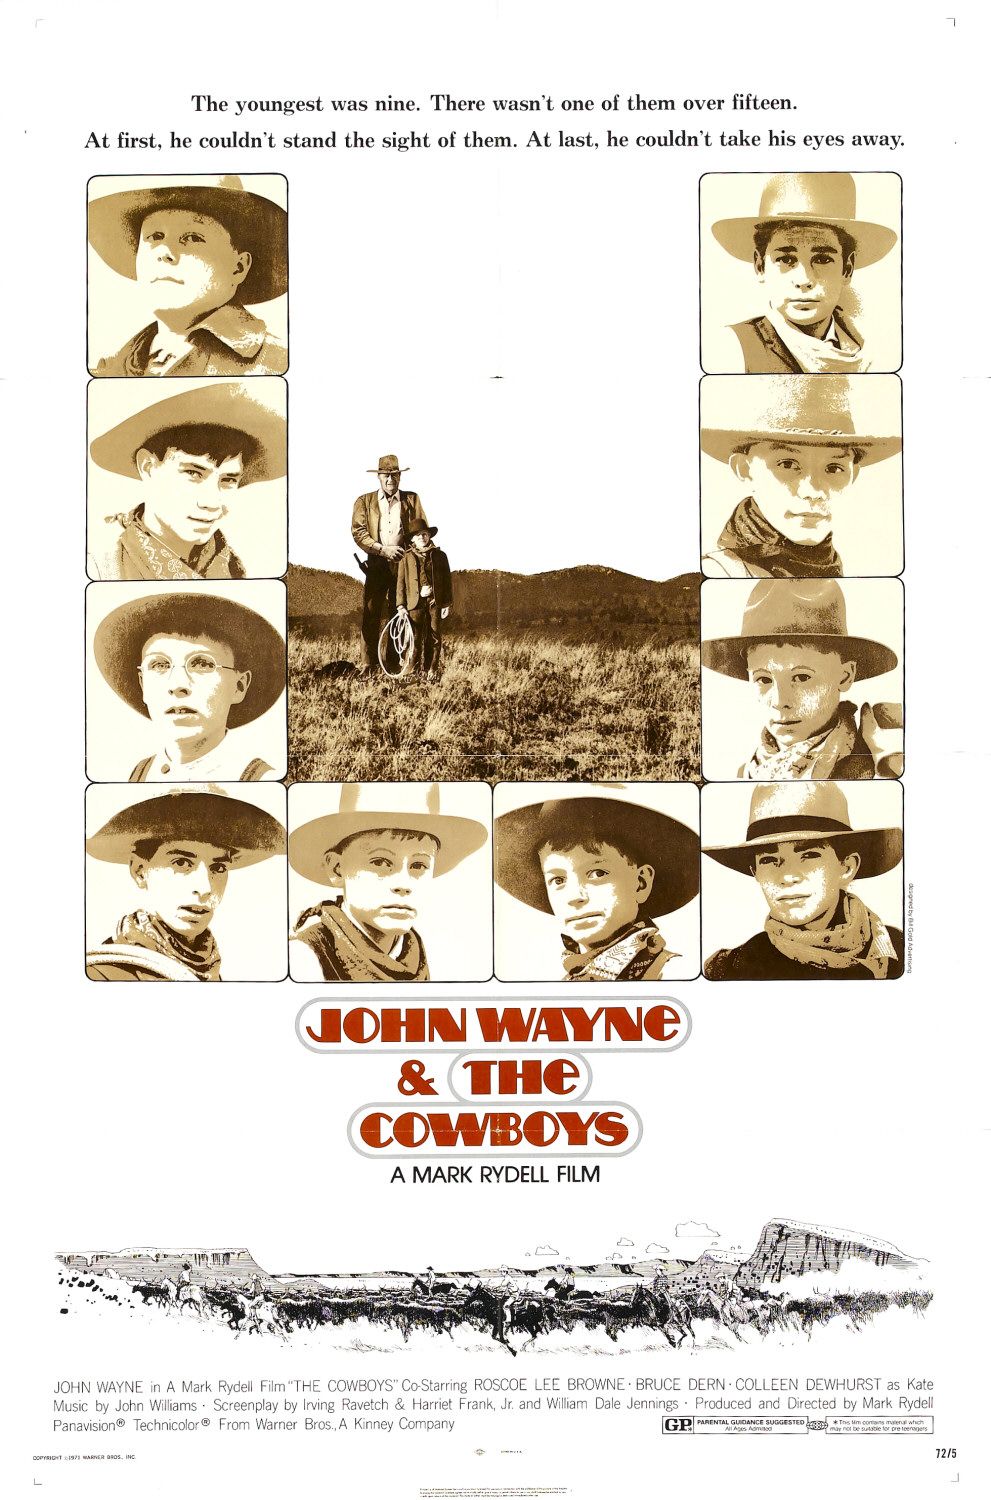 Nonton film The Cowboys layarkaca21 indoxx1 ganool online streaming terbaru